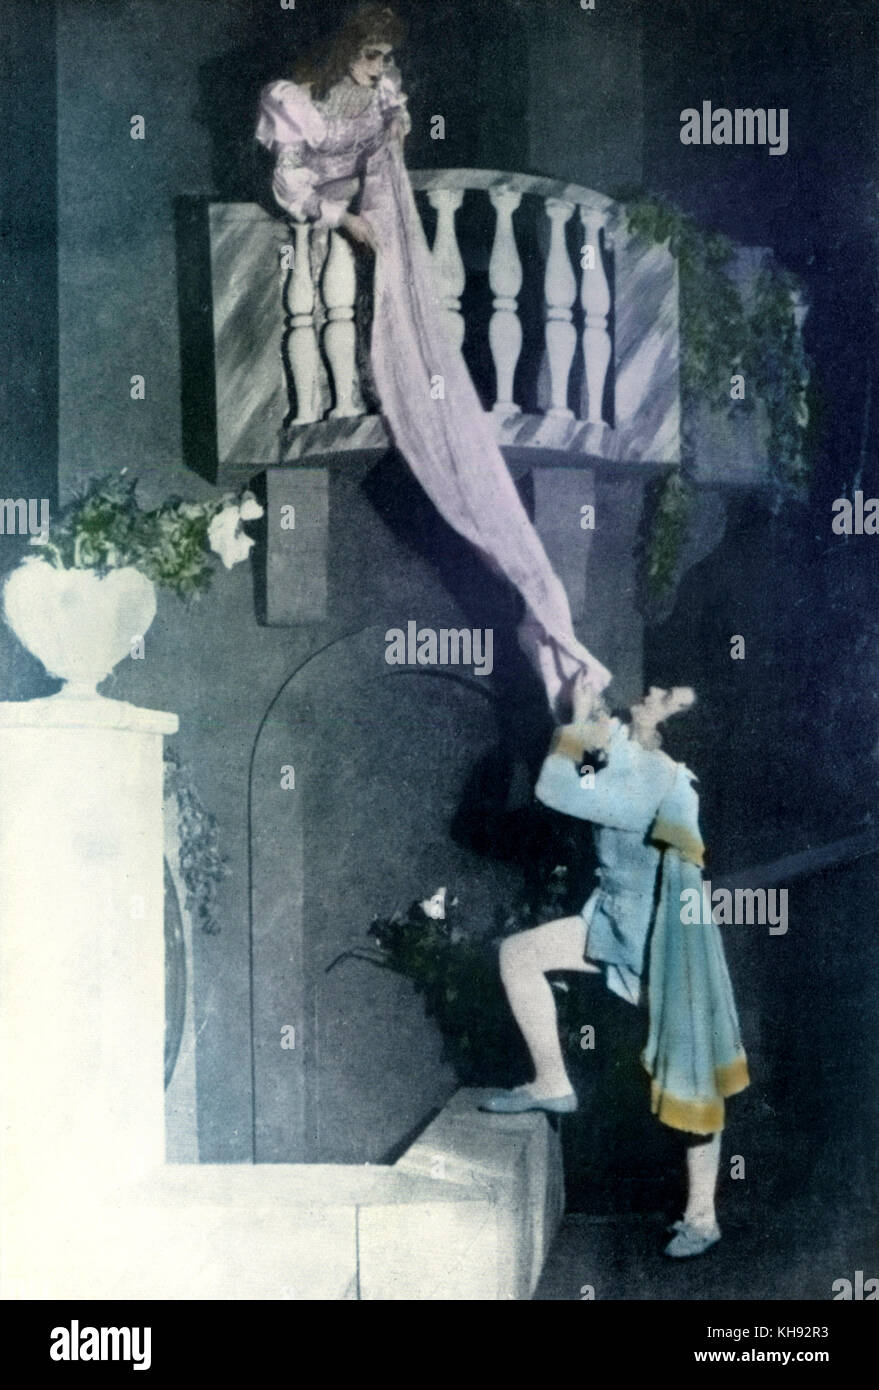 PROKOFIEV - Romeo e Giulietta scena del balcone con Galina Ulanova e Konstantin Sergeyev nel 1940 il compositore russo, 1891-1953 Foto Stock